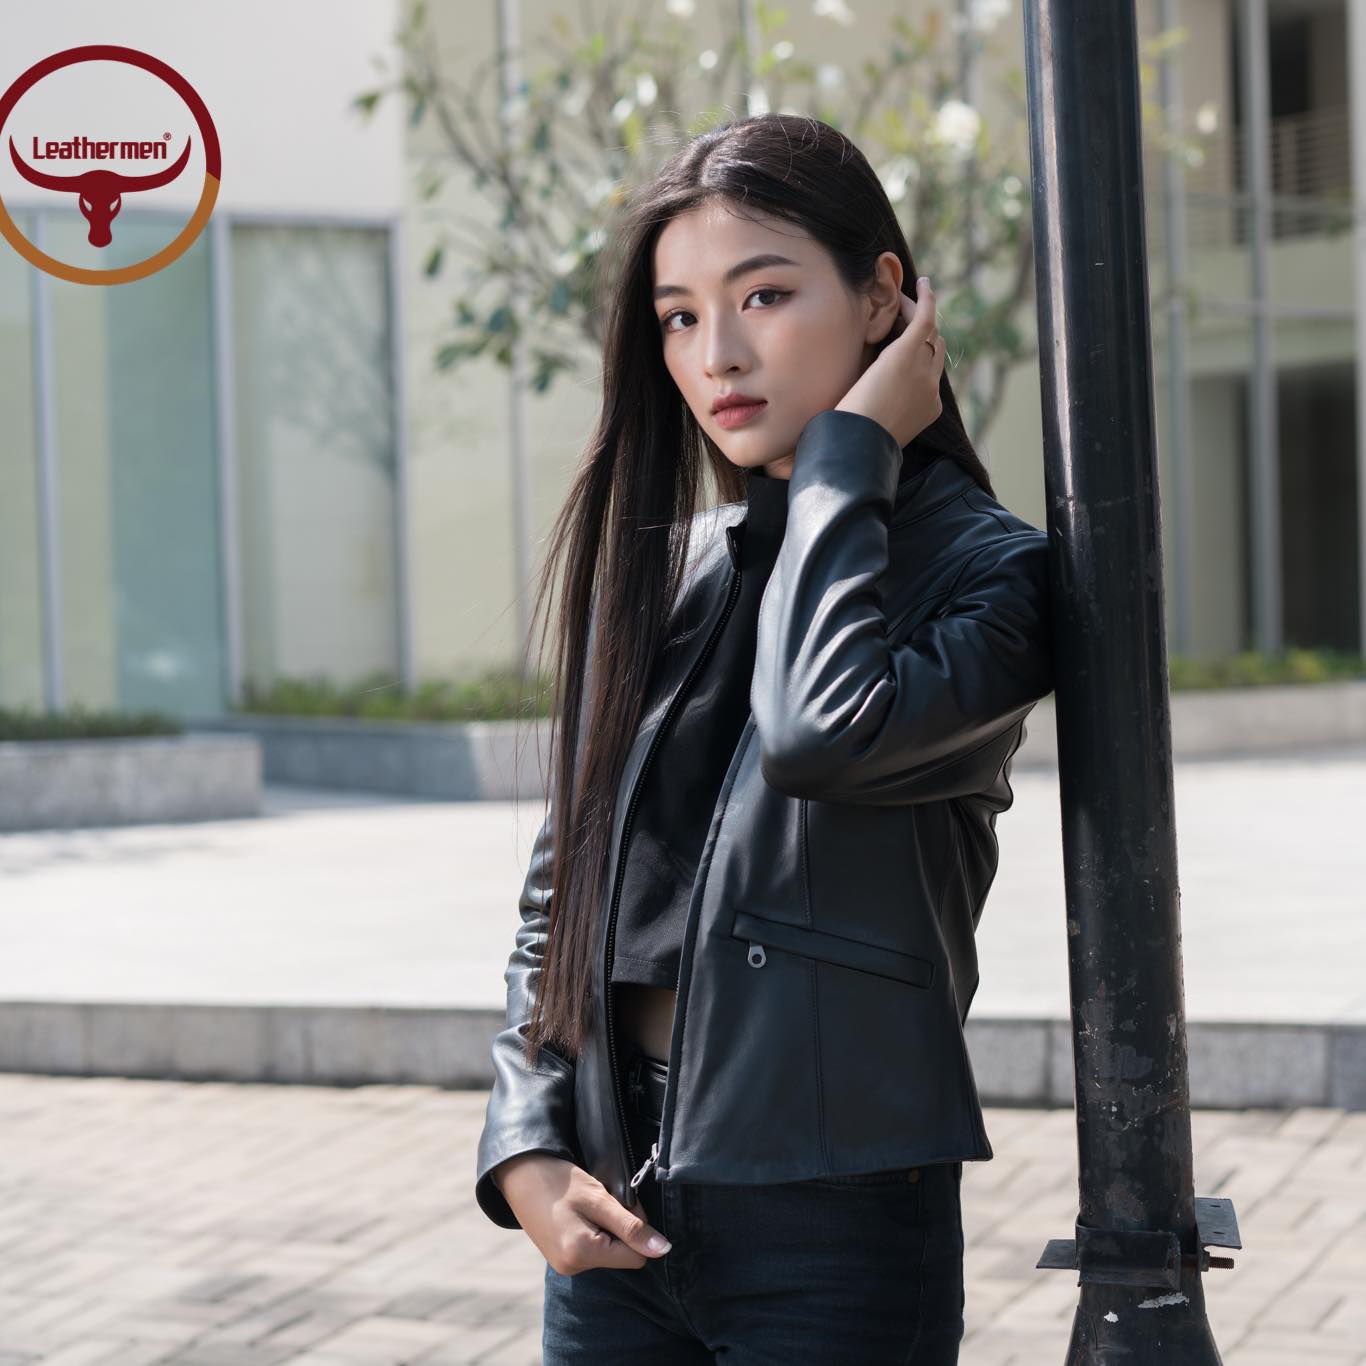 Top n shop bán áo khoác da nữ đẹp nhất Hà Nội